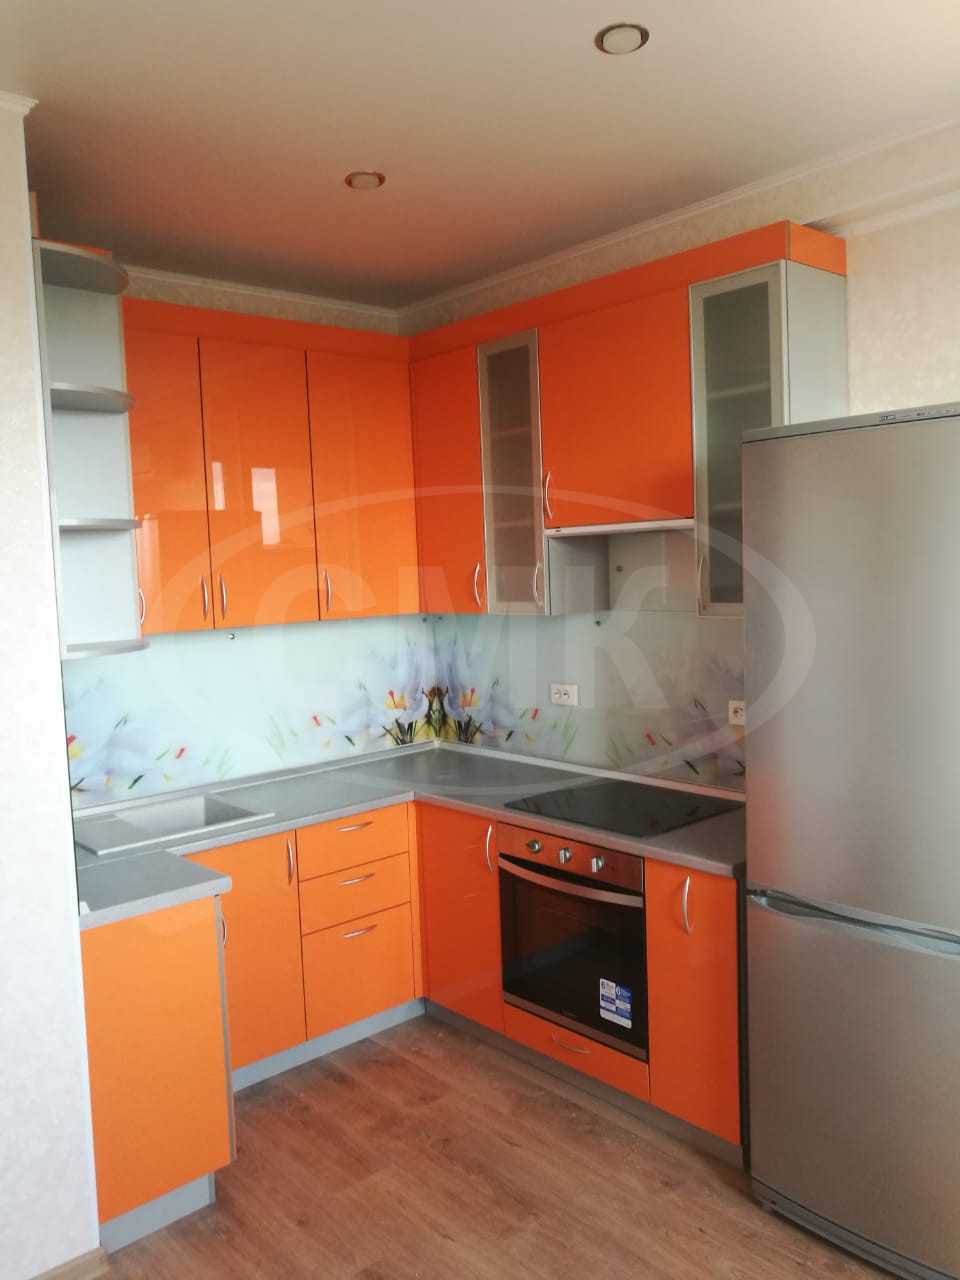 Кухня с пластиковыми фасадами (оранжевая).